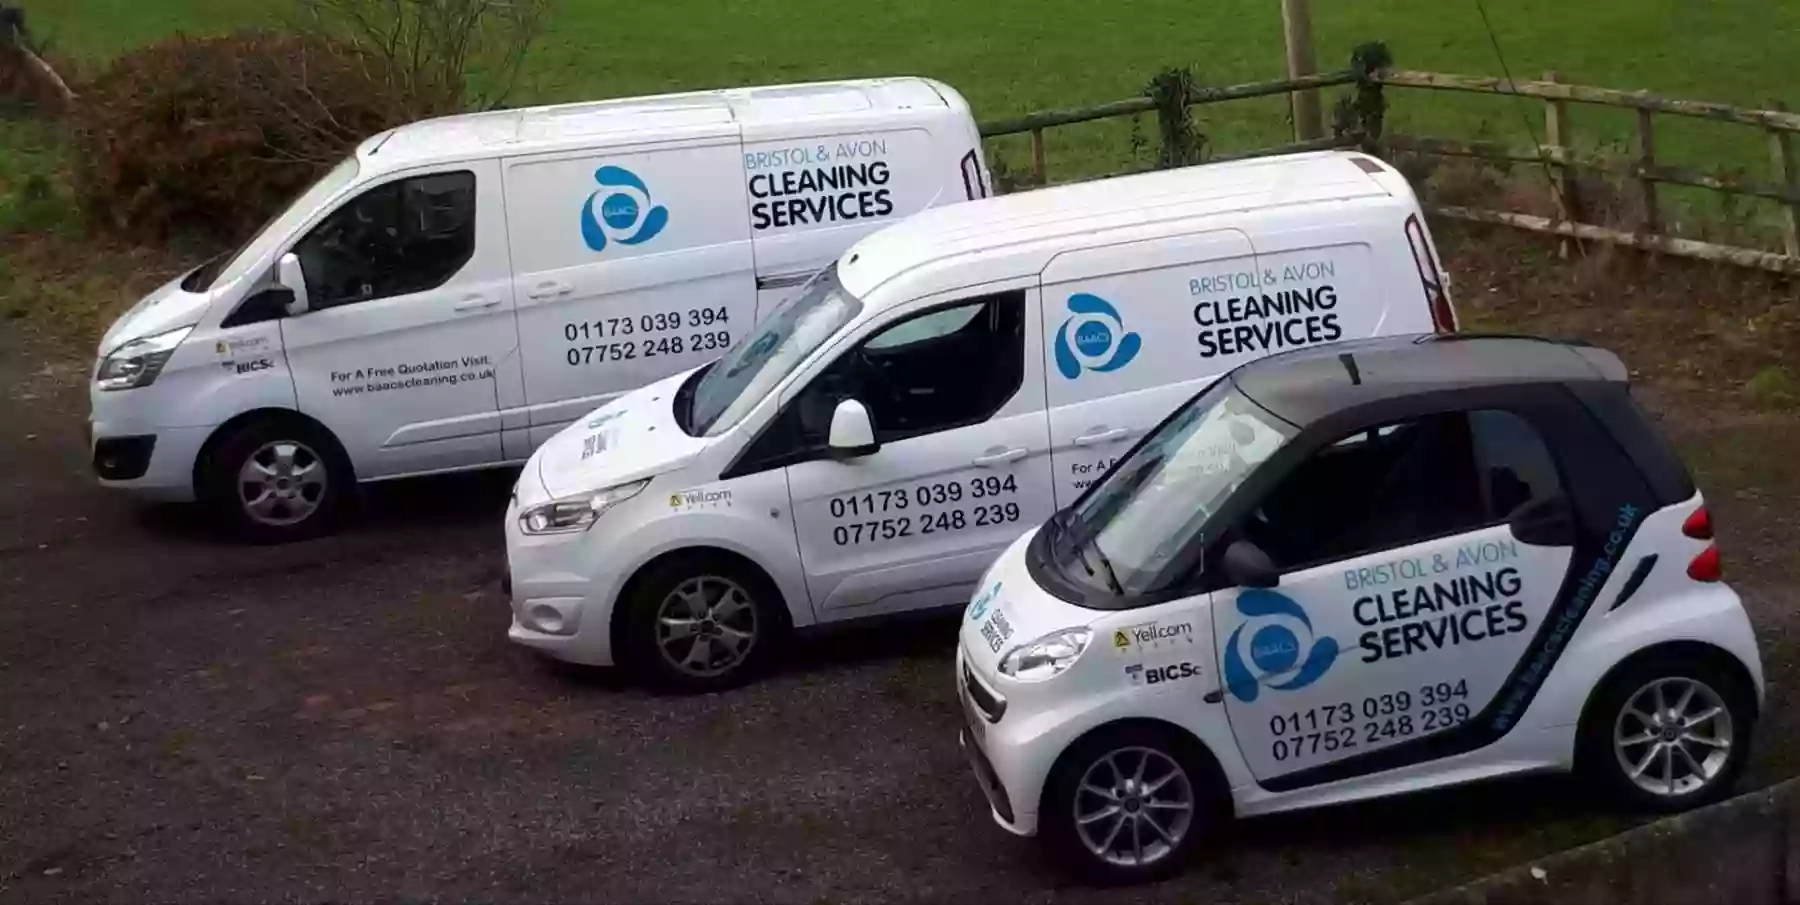 Bristol & Avon Cleaning Services Ltd